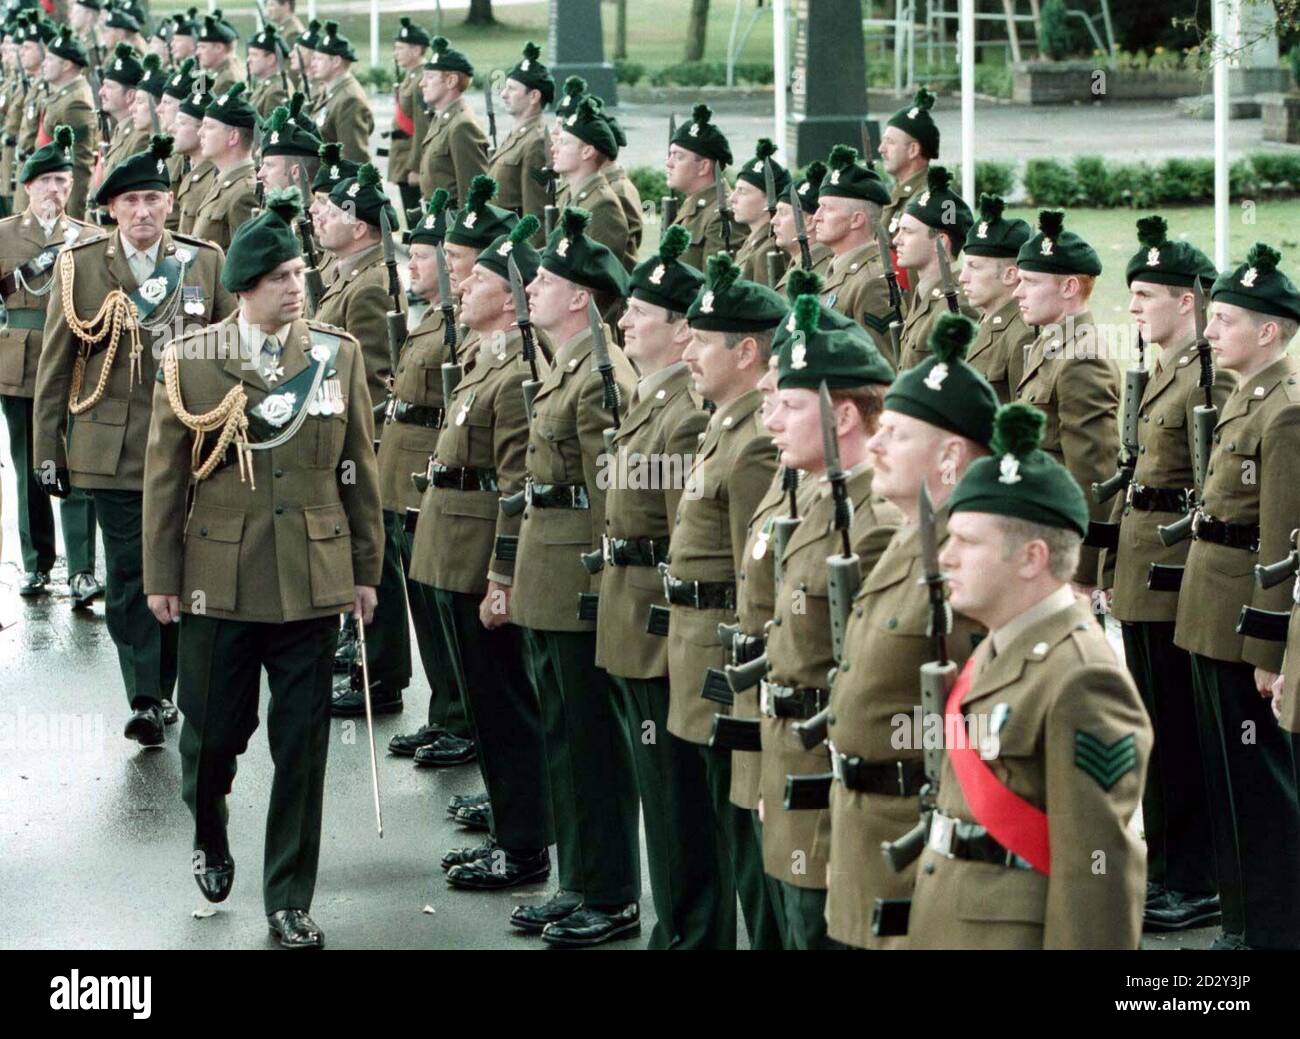 Le duc d'York, qui est colonel en chef du Royal Irish Regiment, lors d'une inspection des 4e et 5e Bataillon des Royal Irish Rangers (bénévoles) lors d'une présentation de nouvelles couleurs à la caserne St Patrick, Ballymena, aujourd'hui(mercredi). Photo de Brian Little/PA. Voir l'histoire de PA ULSTER Duke. Banque D'Images